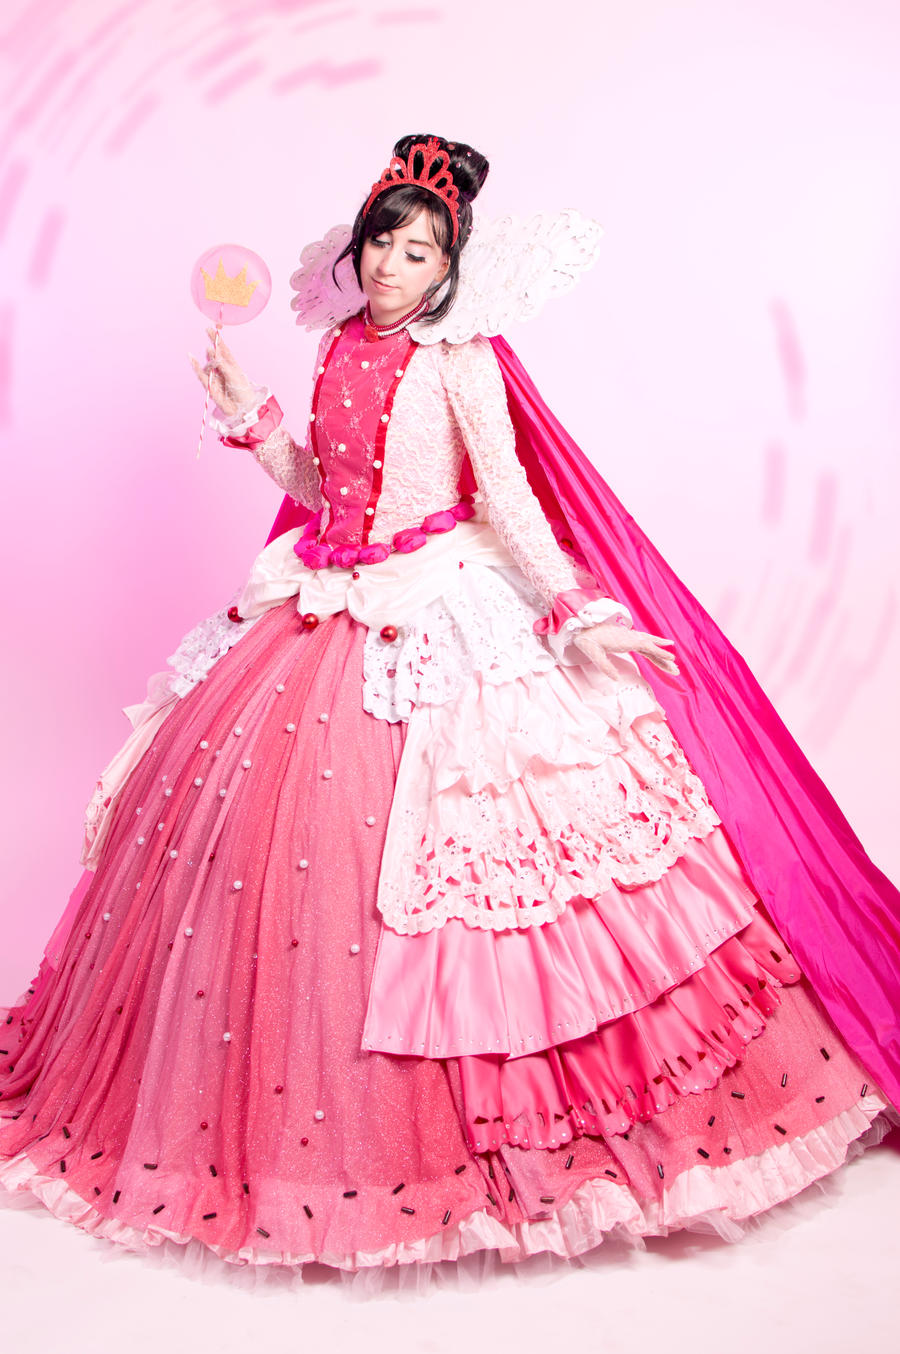 Vanellope Von Schweetz Costume / Cosplay by PrincessDitto on